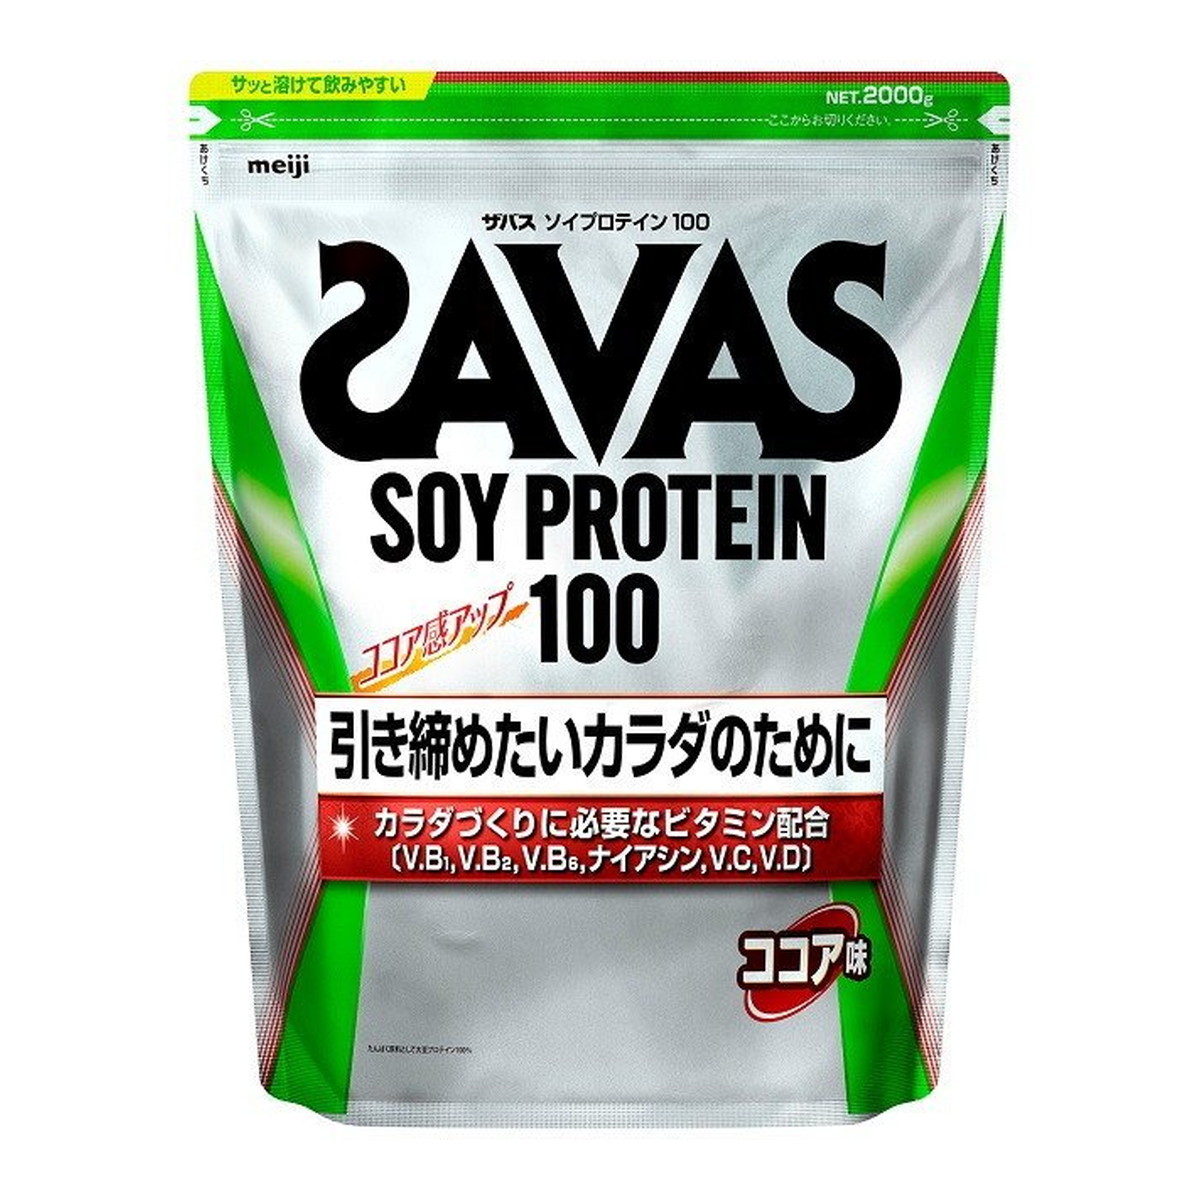 ザバス ソイプロテイン100 ココア味 2000g SAVAS プロテイン  女性 ダイエット 植物性